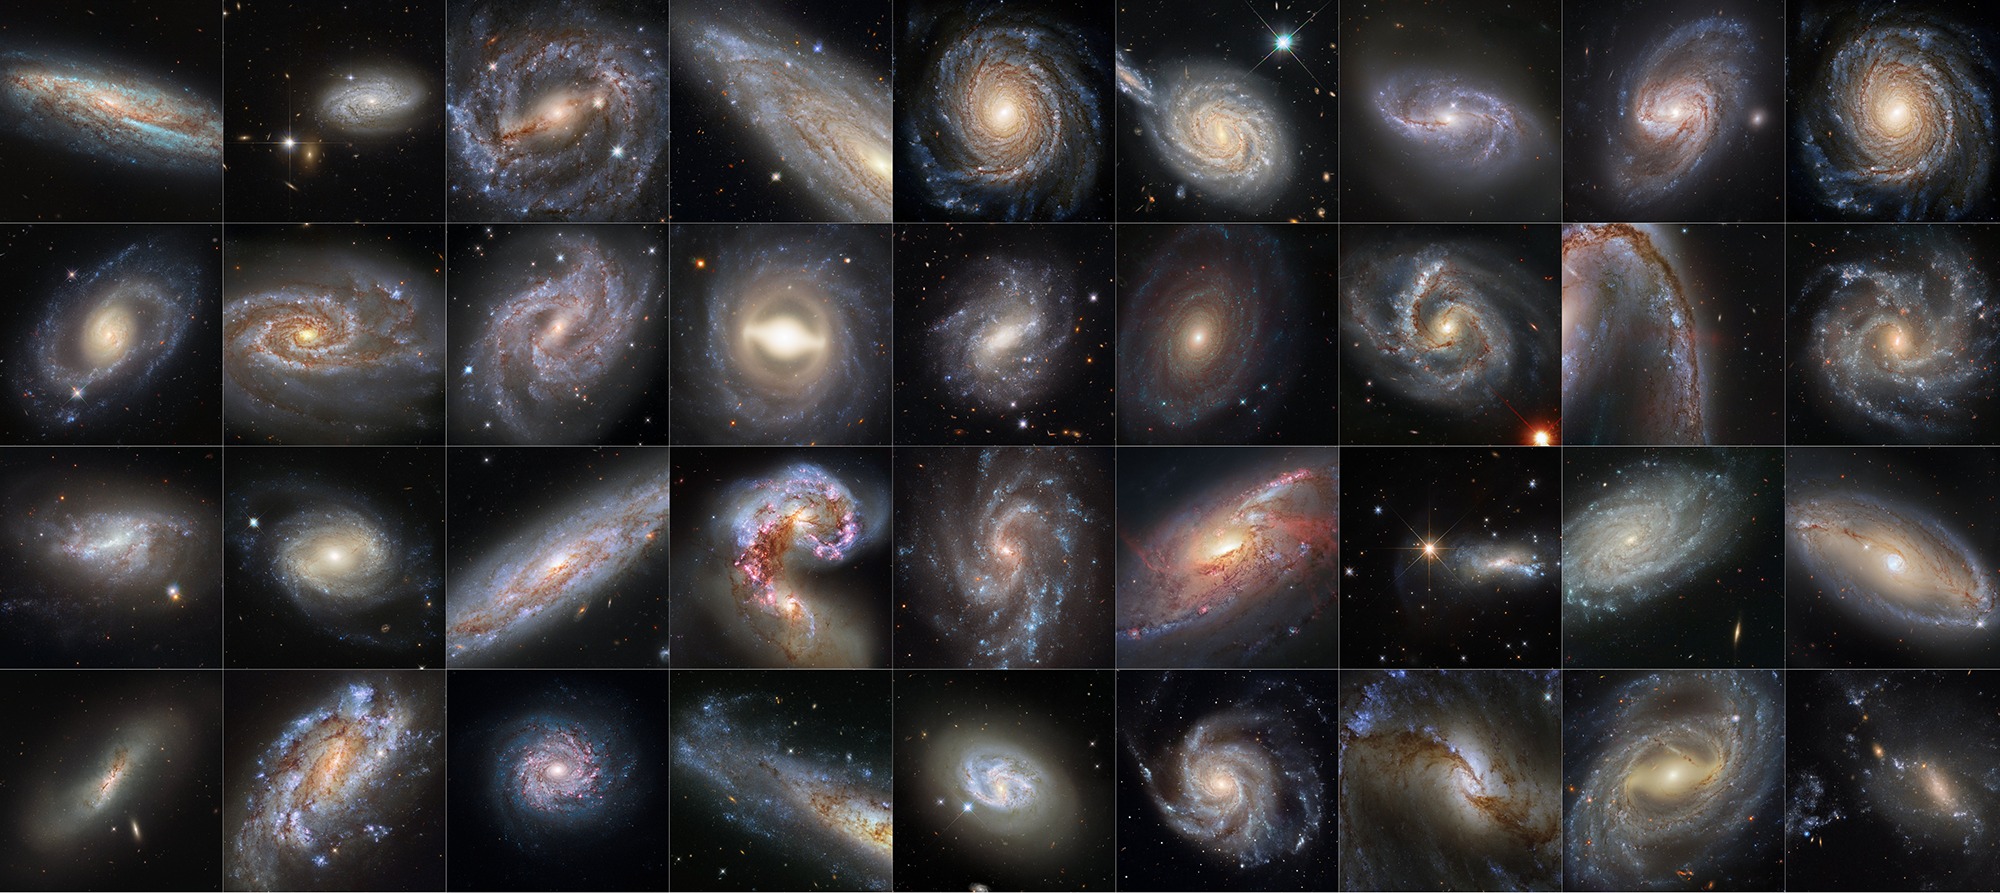 Ova zbirka od 36 slika s NASA-inog svemirskog teleskopa Hubble prikazuje galaksije koje su sve domaćini varijabli cefeuda i supernova. Ova dva nebeska fenomena ključni su alati koje astronomi koriste za određivanje astronomske udaljenosti, a korišteni su i za preciziranje našeg mjerenja Hubble konstante, brzine širenja svemira (©NASA, ESA, Adam G. Riess (STScI, JHU)).